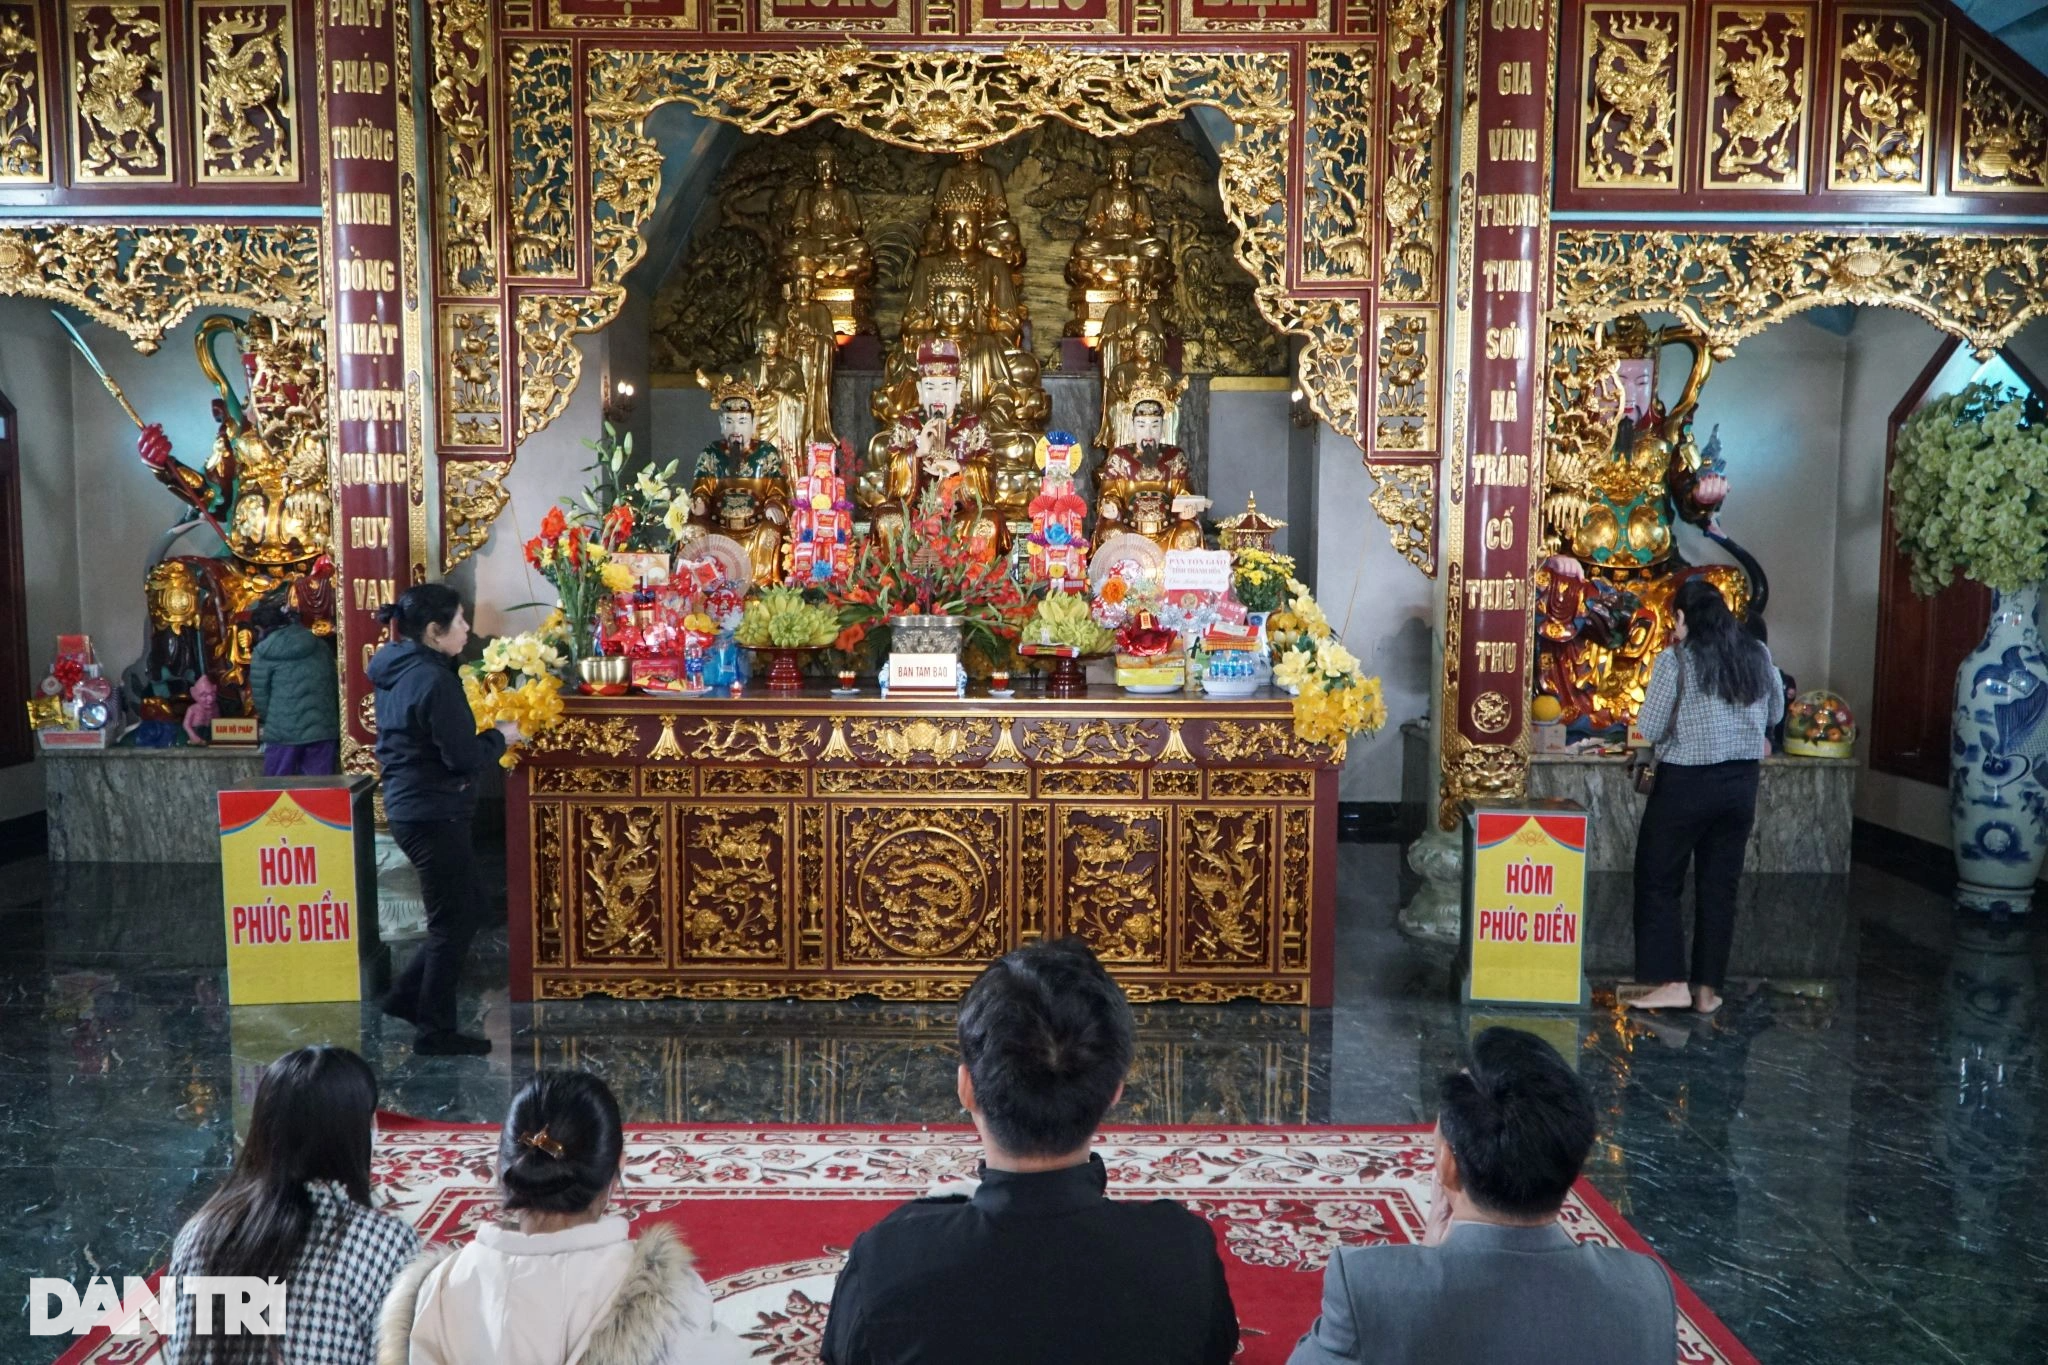 View - Du khách rải tiền lẻ vào bộ xương cá voi ở ngôi chùa thiêng nơi cửa biển | Báo Dân trí